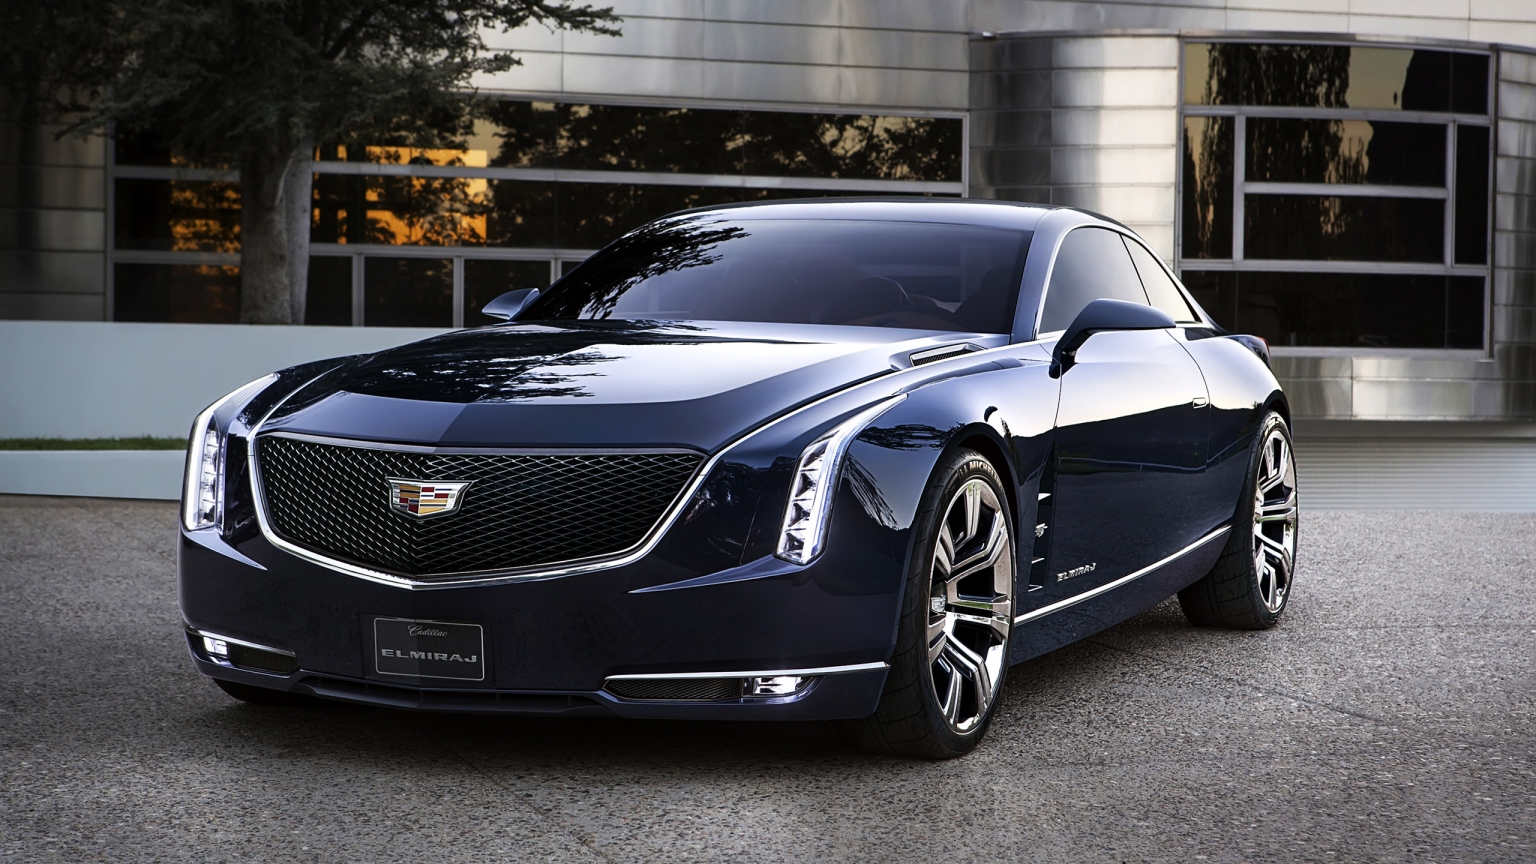 2013 Cadillac Elmiraj Concept for 1536 x 864 HDTV resolution